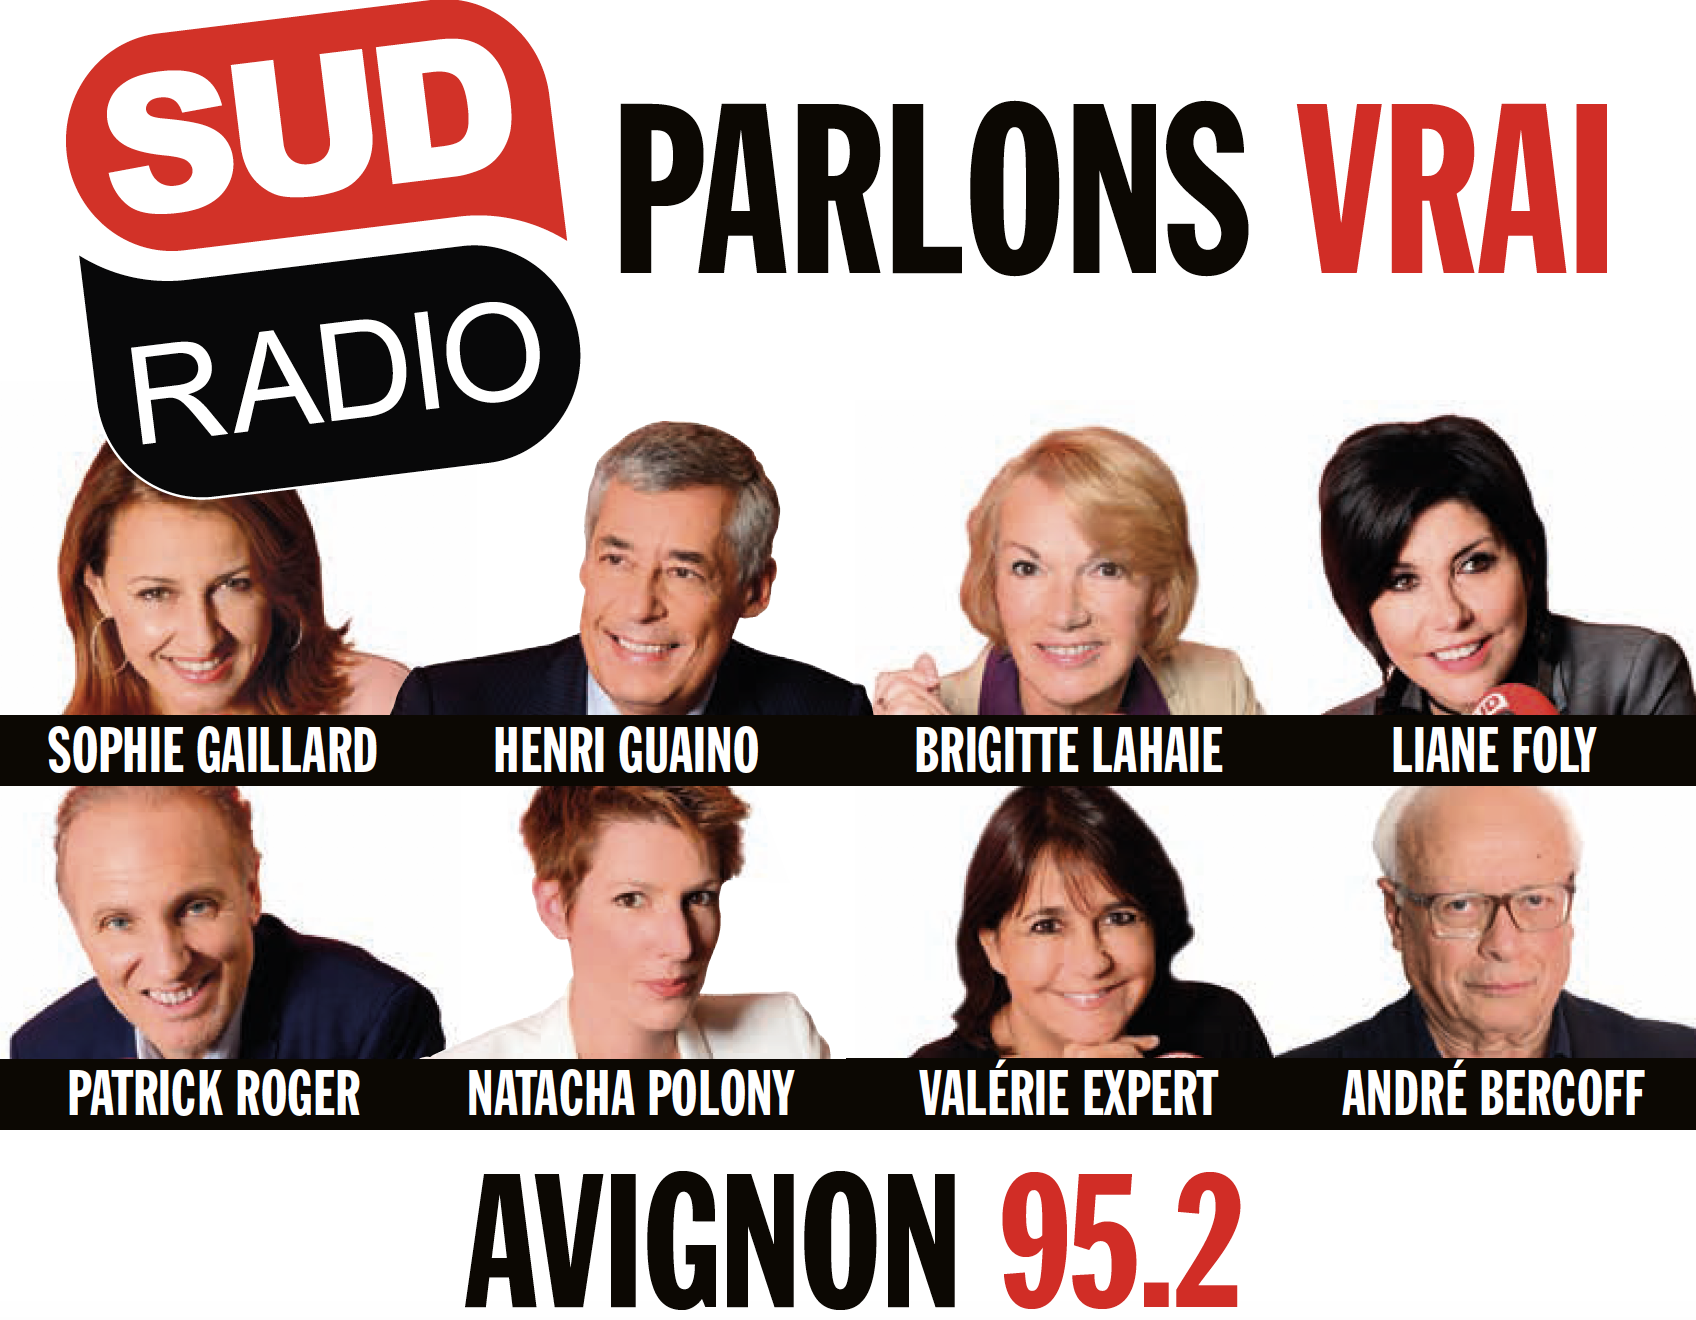 Sud Radio lance une nouvelle campagne dans toute la France